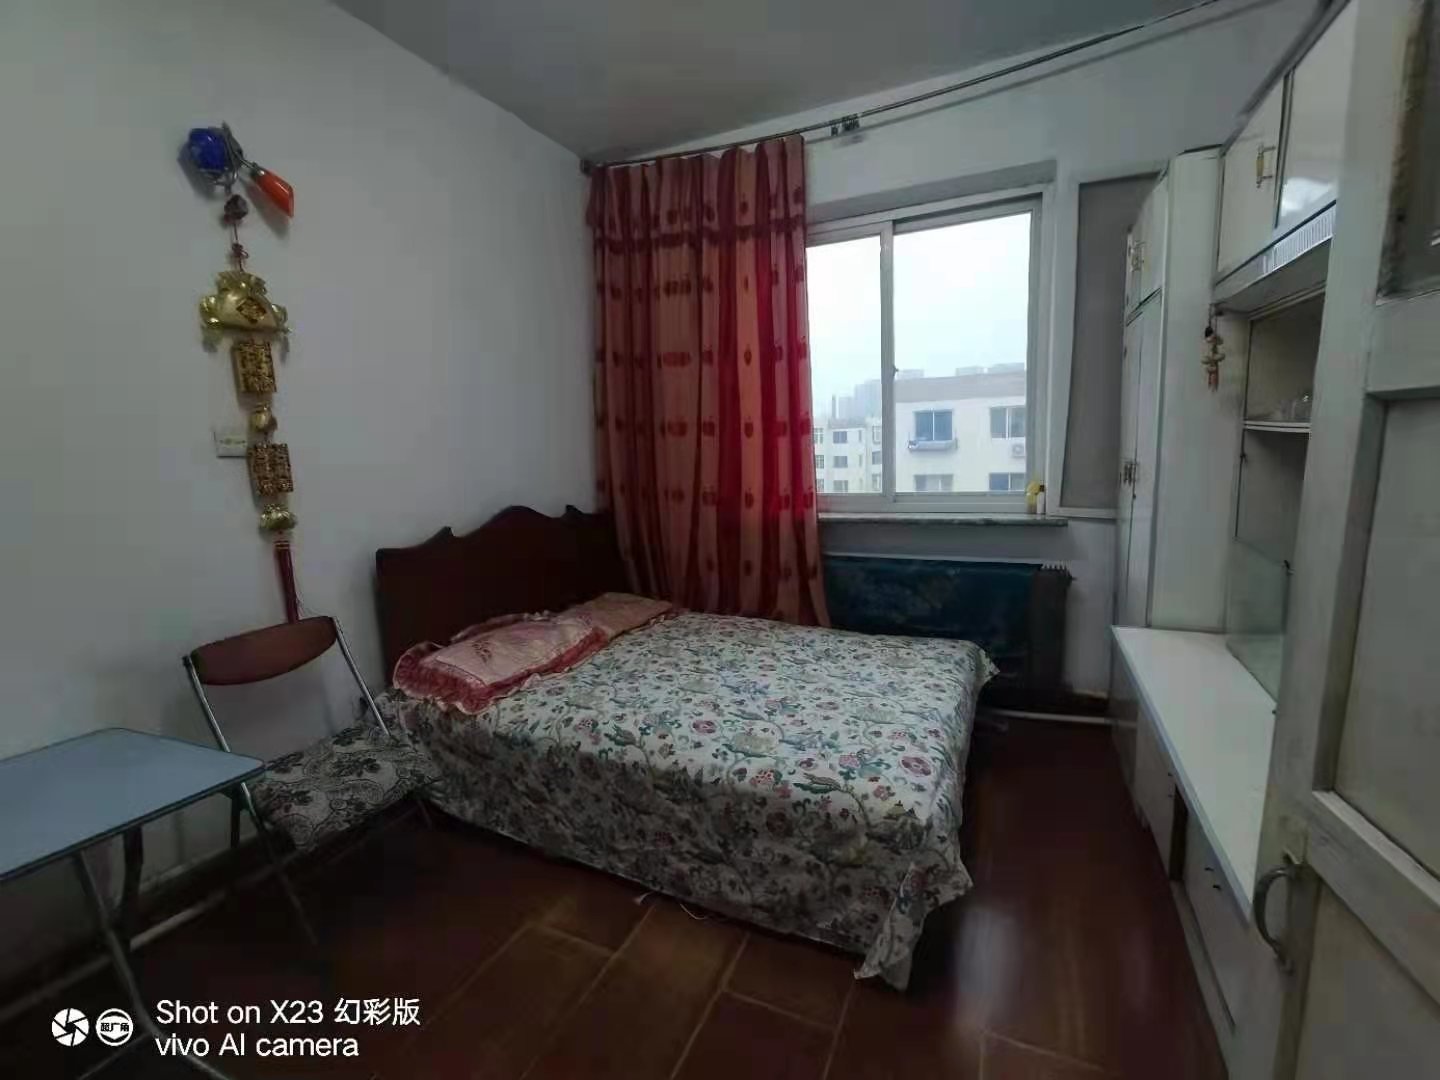 出租长江南小区两室900元一个月-长江南小区租房